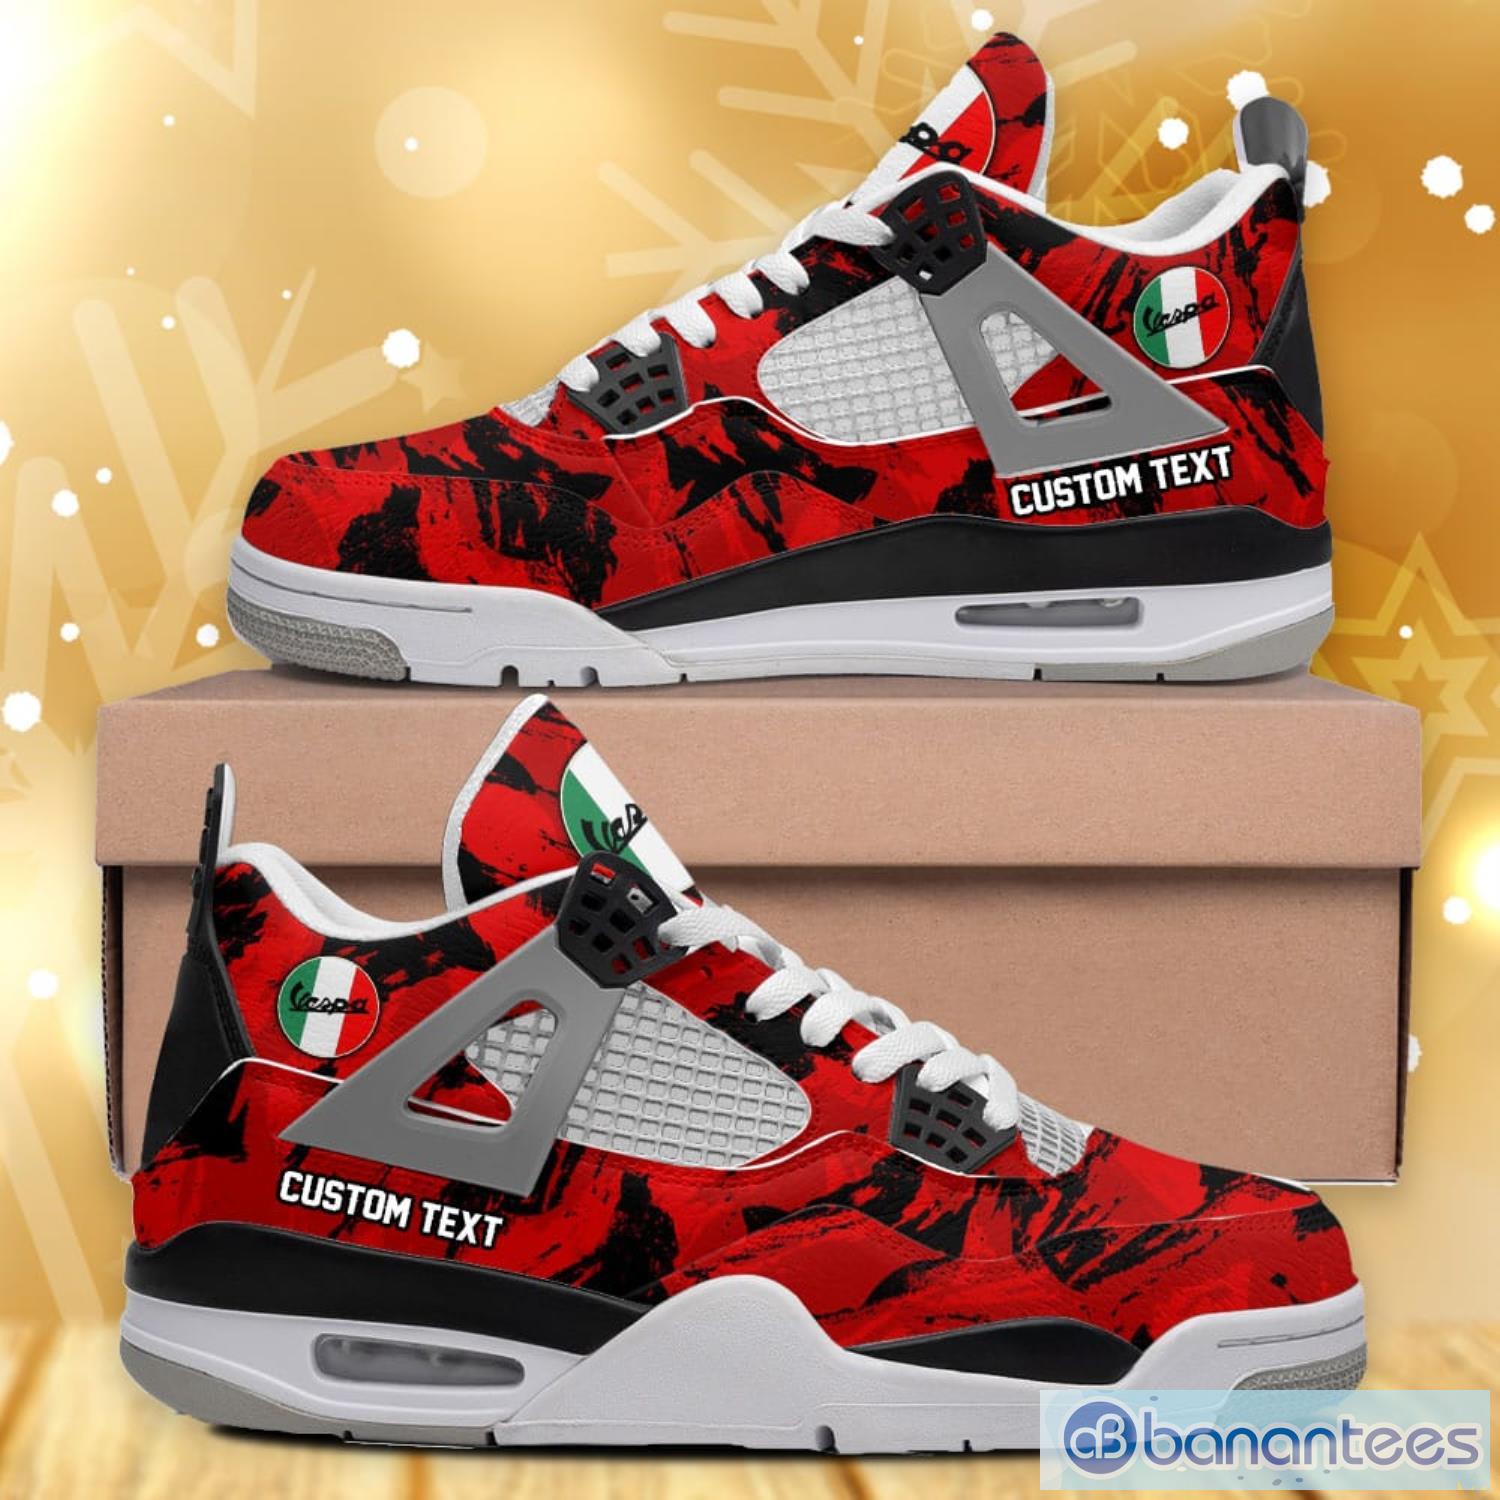 Jordan, Shoes, Air Jordan Retro 2 Customized Camo